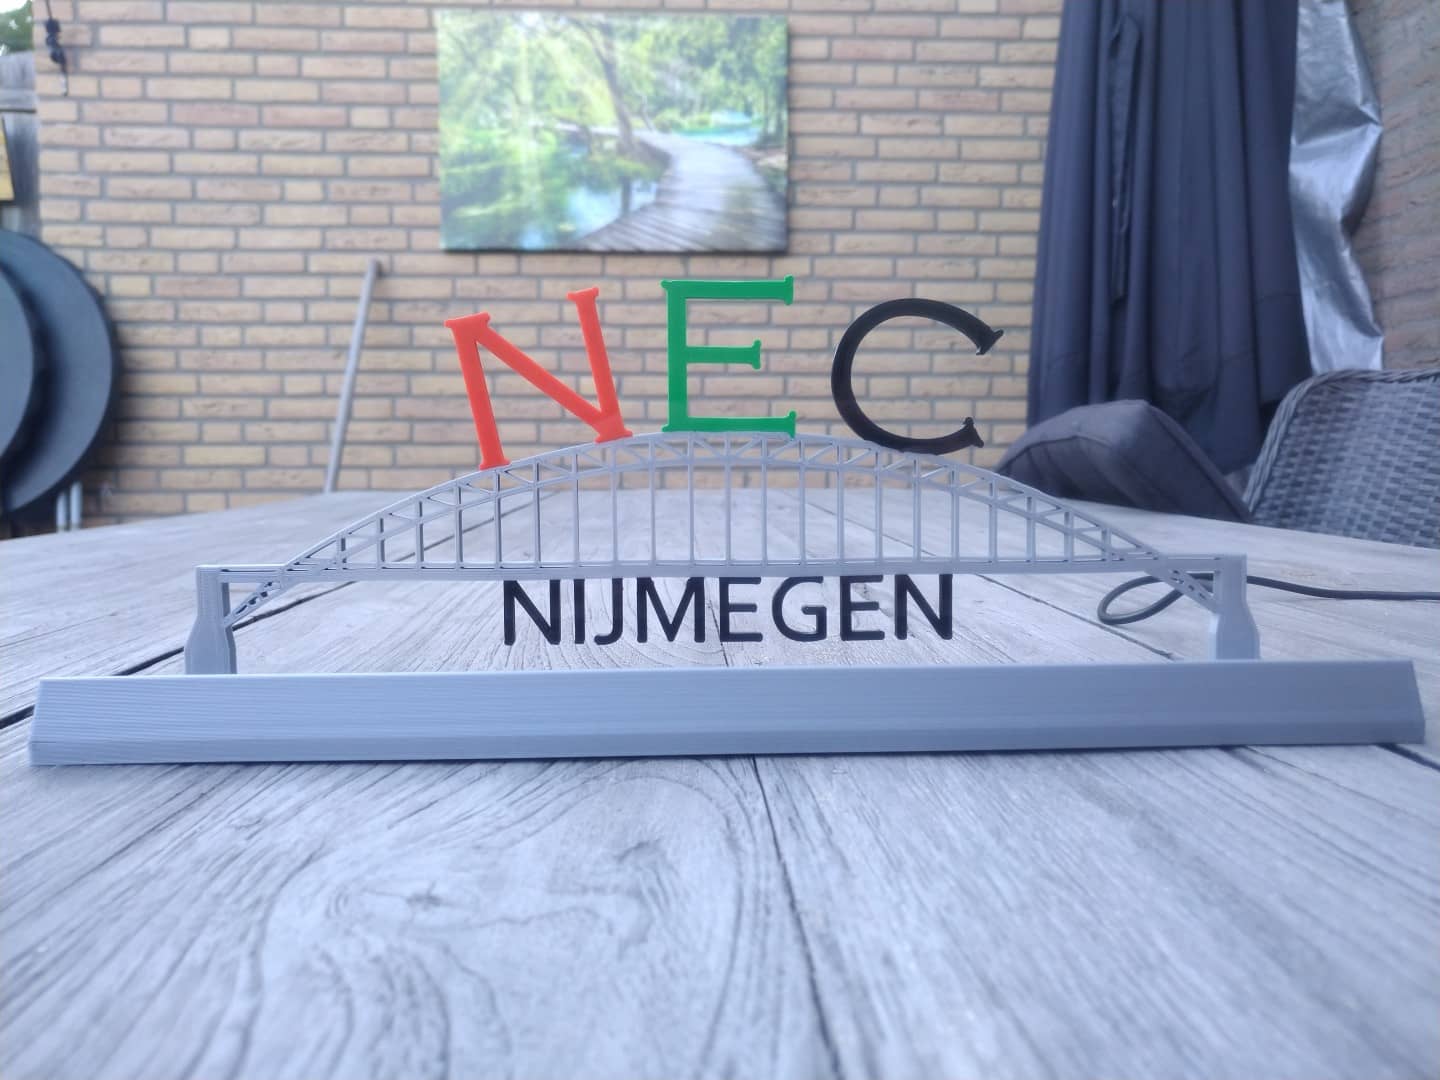 Waalbrug NEC rood groen zwart Nijmegen - LEDversie